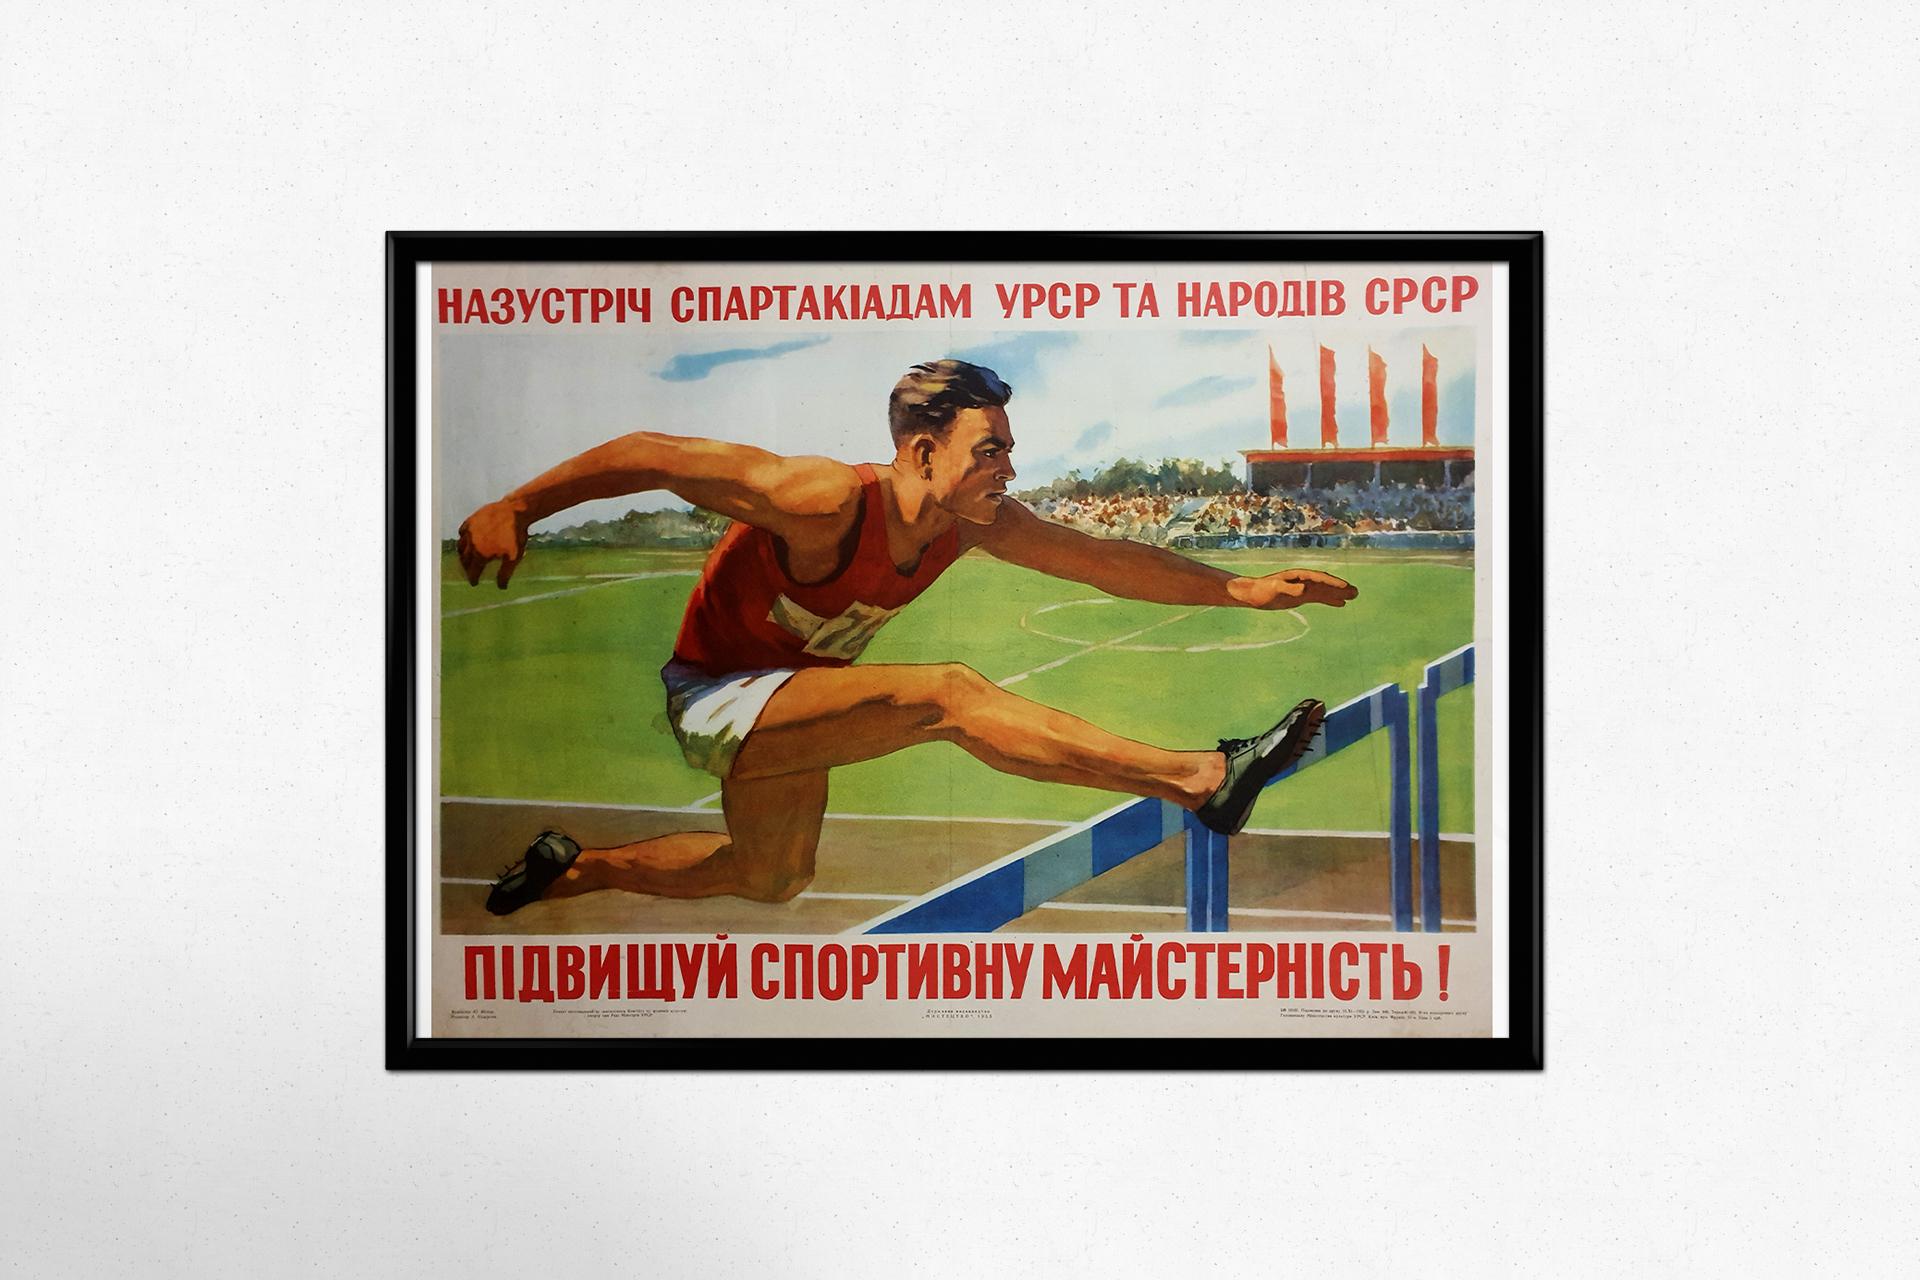 Belle affiche soviétique réalisée en 1955.

La Spartakiade était un événement sportif international parrainé par l'Union soviétique. Cinq spartakiades internationales ont été organisées de 1928 à 1937. Plus tard, les spartakiades ont été organisées